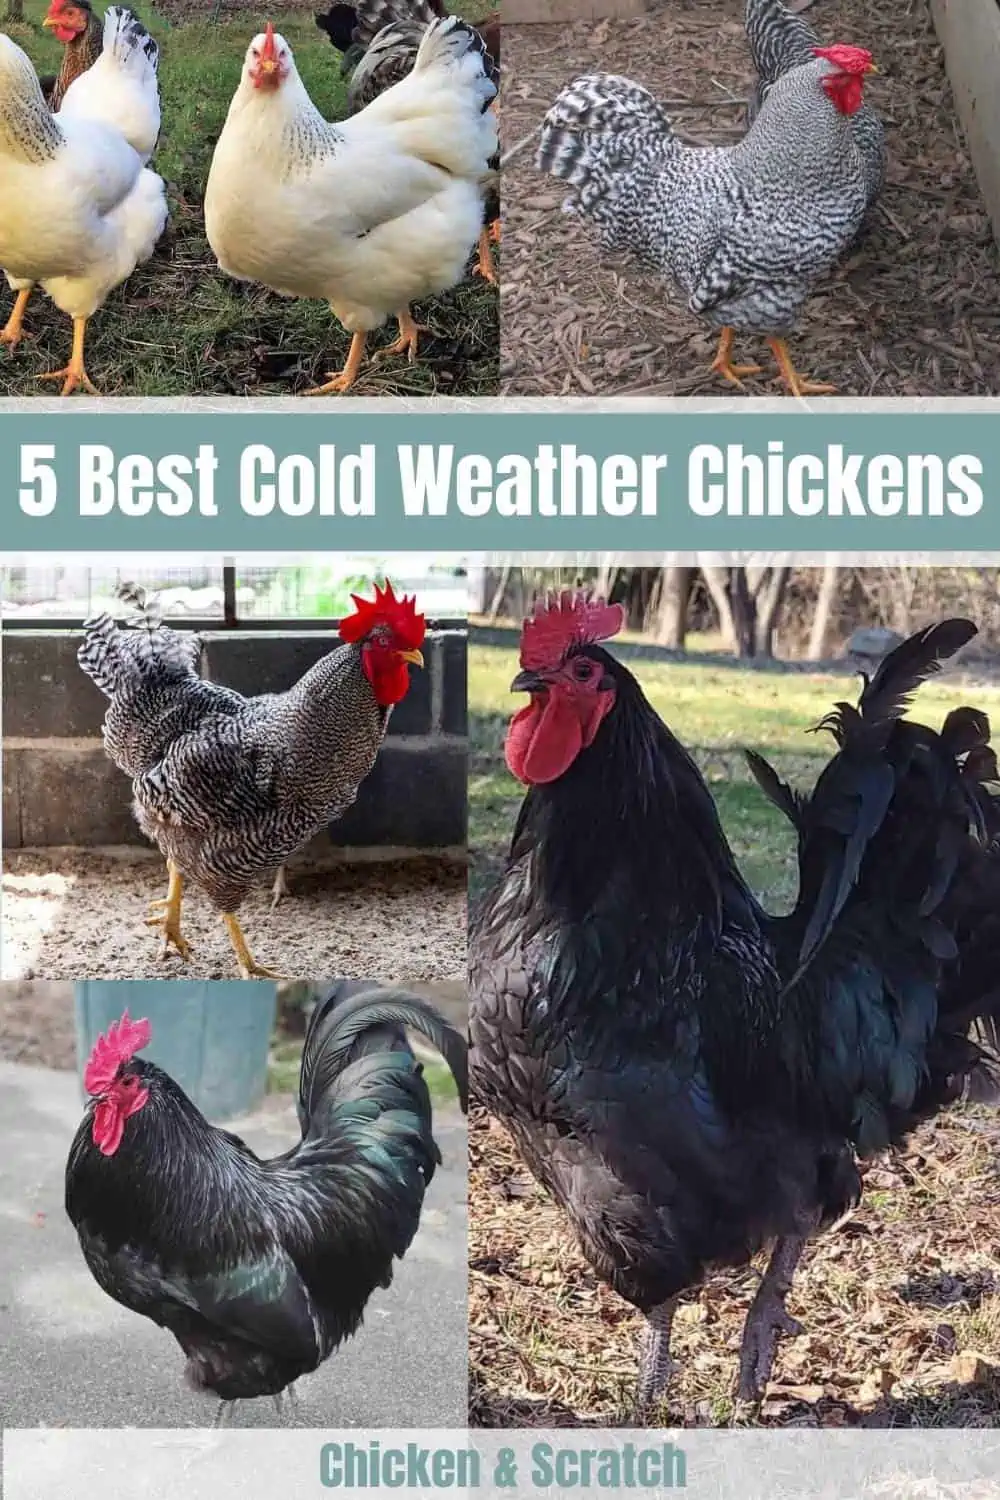 5 melhores galinhas para o tempo frio (com fotos)